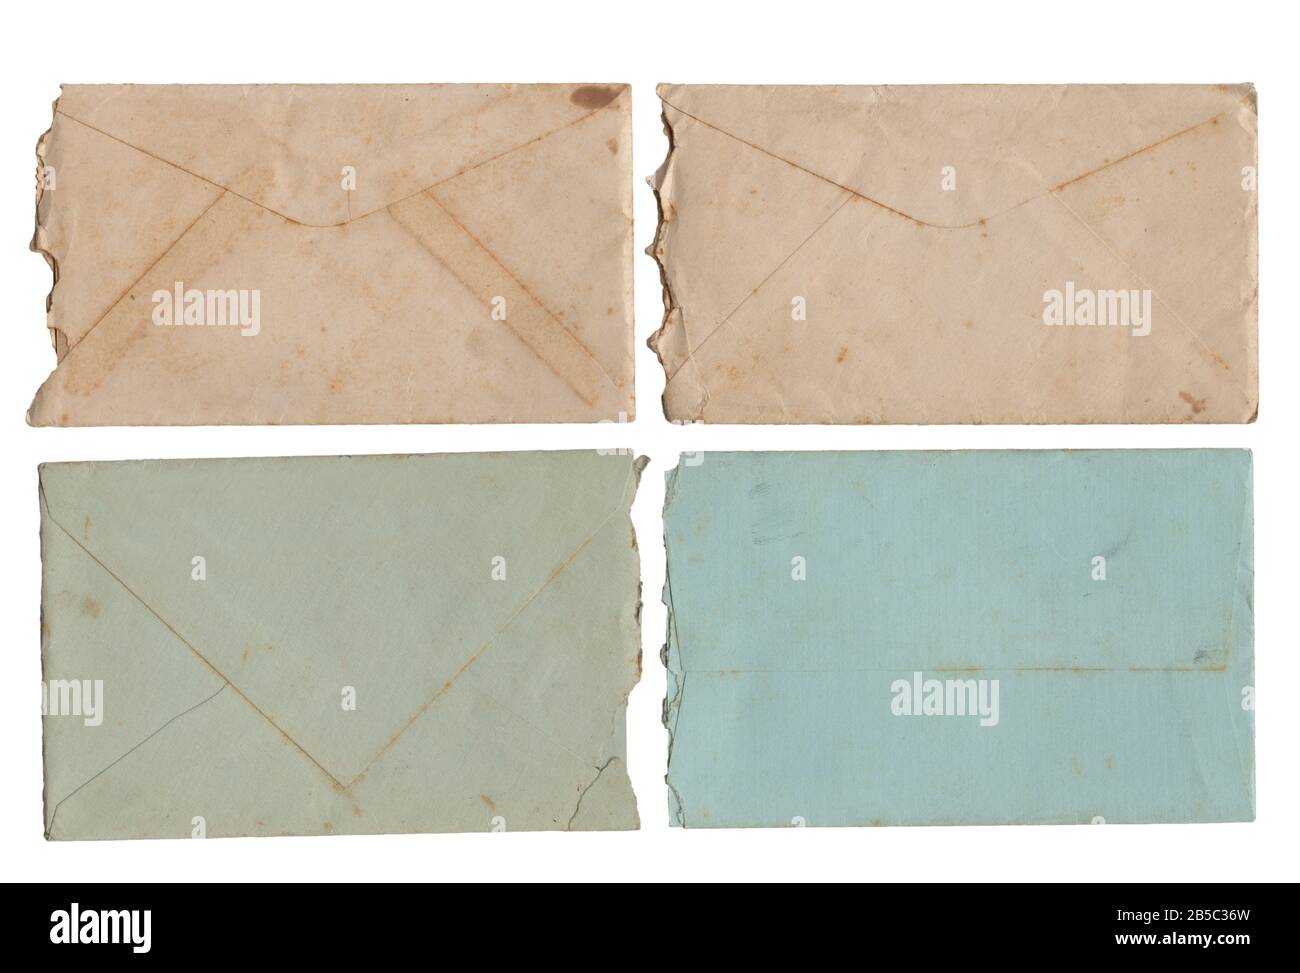 Vier alte verfärbte Umschläge auf weißem Grund aus dem Jahr 1924. Dies ist ein hochauflösender Scan, der alle Details anzeigt. Stockfoto